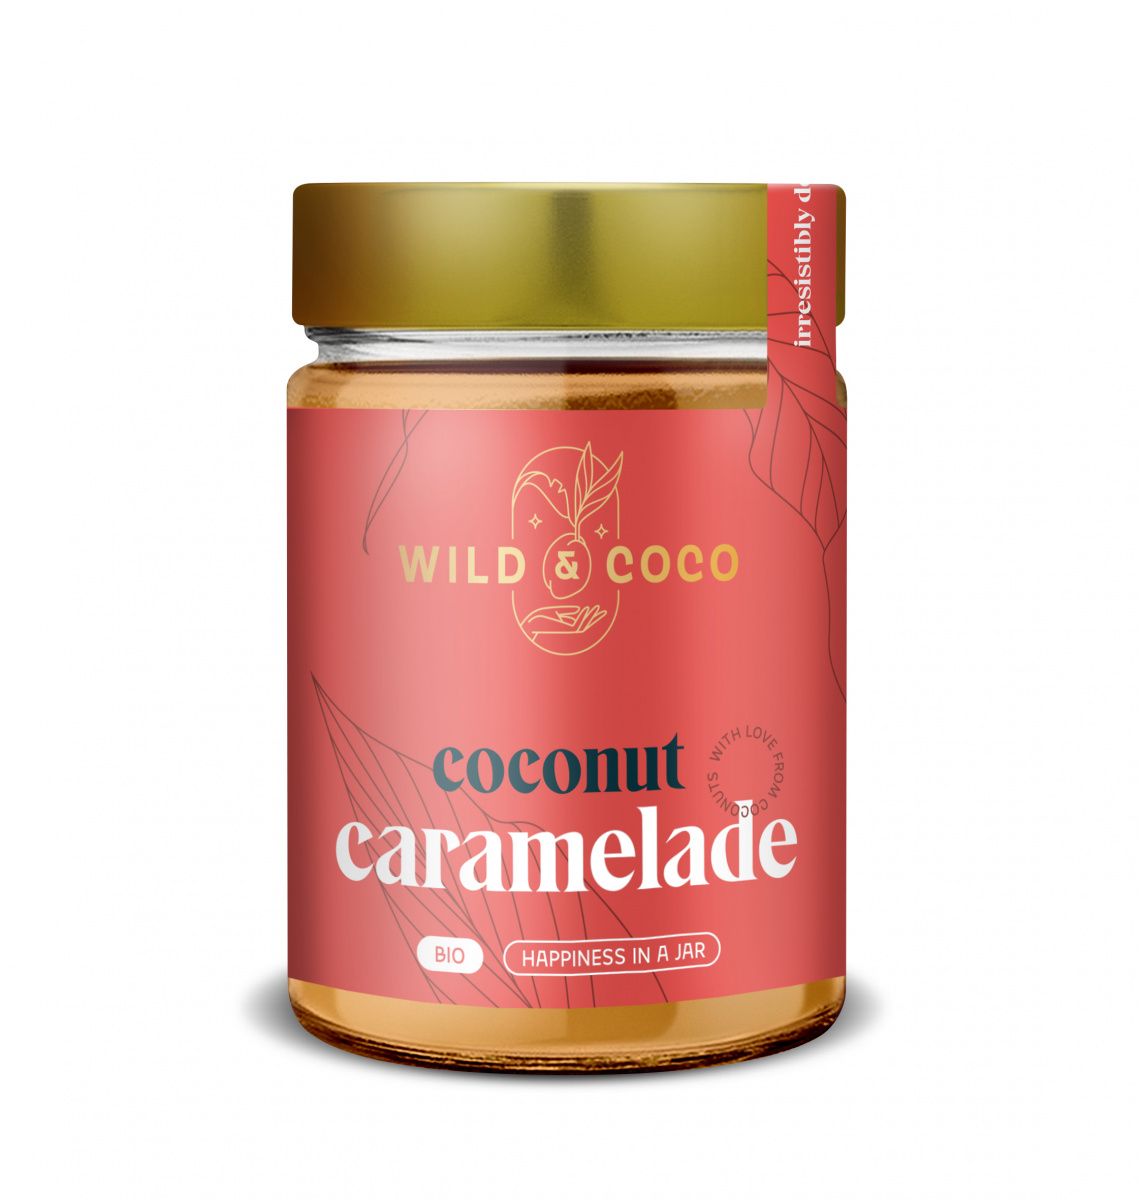 Karameláda (vylepšený kokosový džem) 300g Wild & Coco